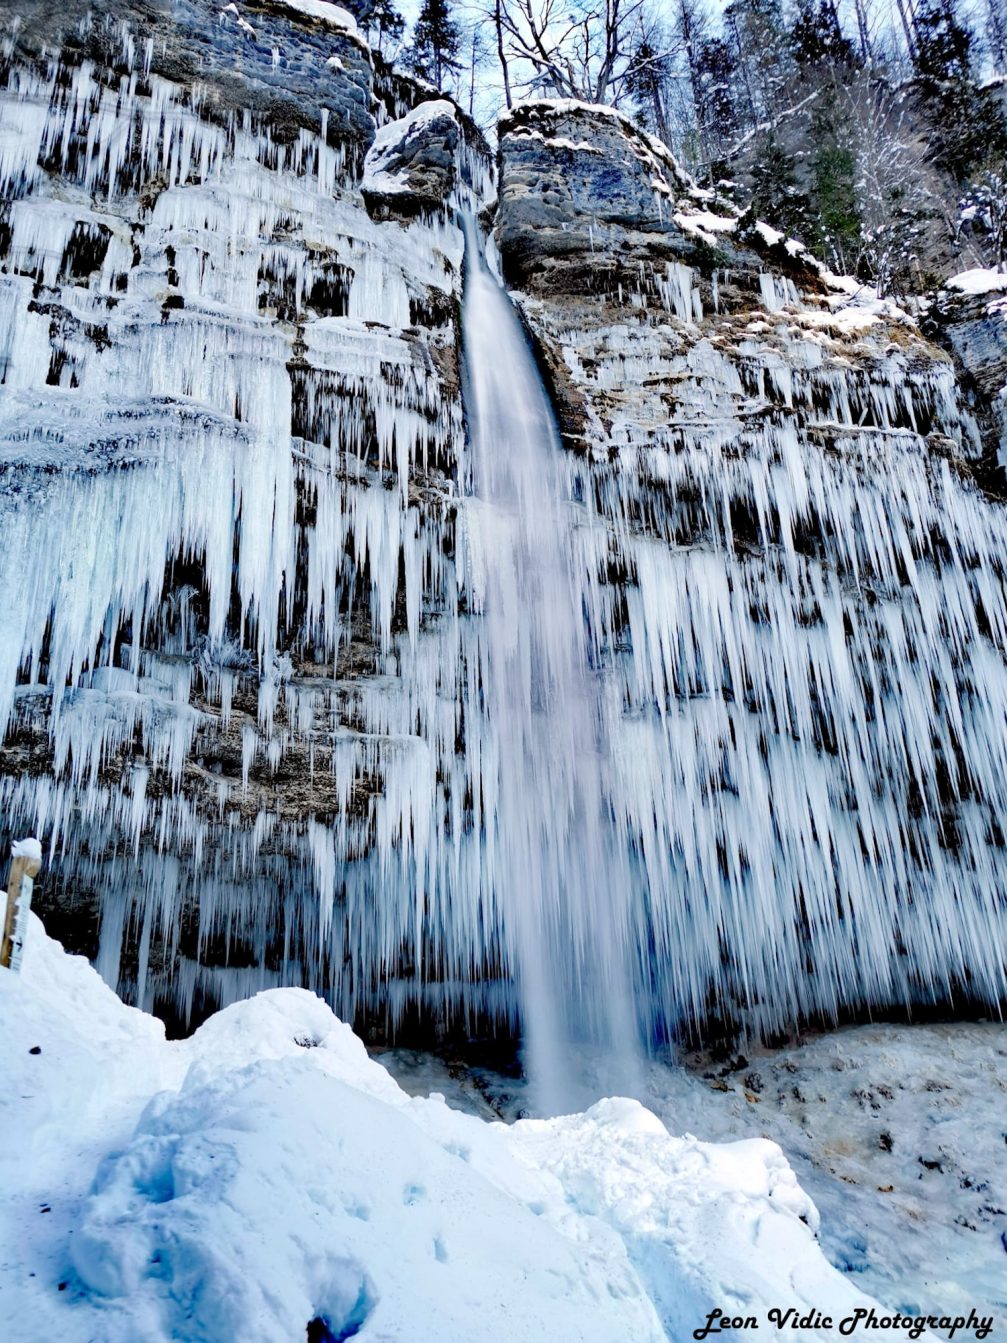 Pericnik Waterfall frozen in winter